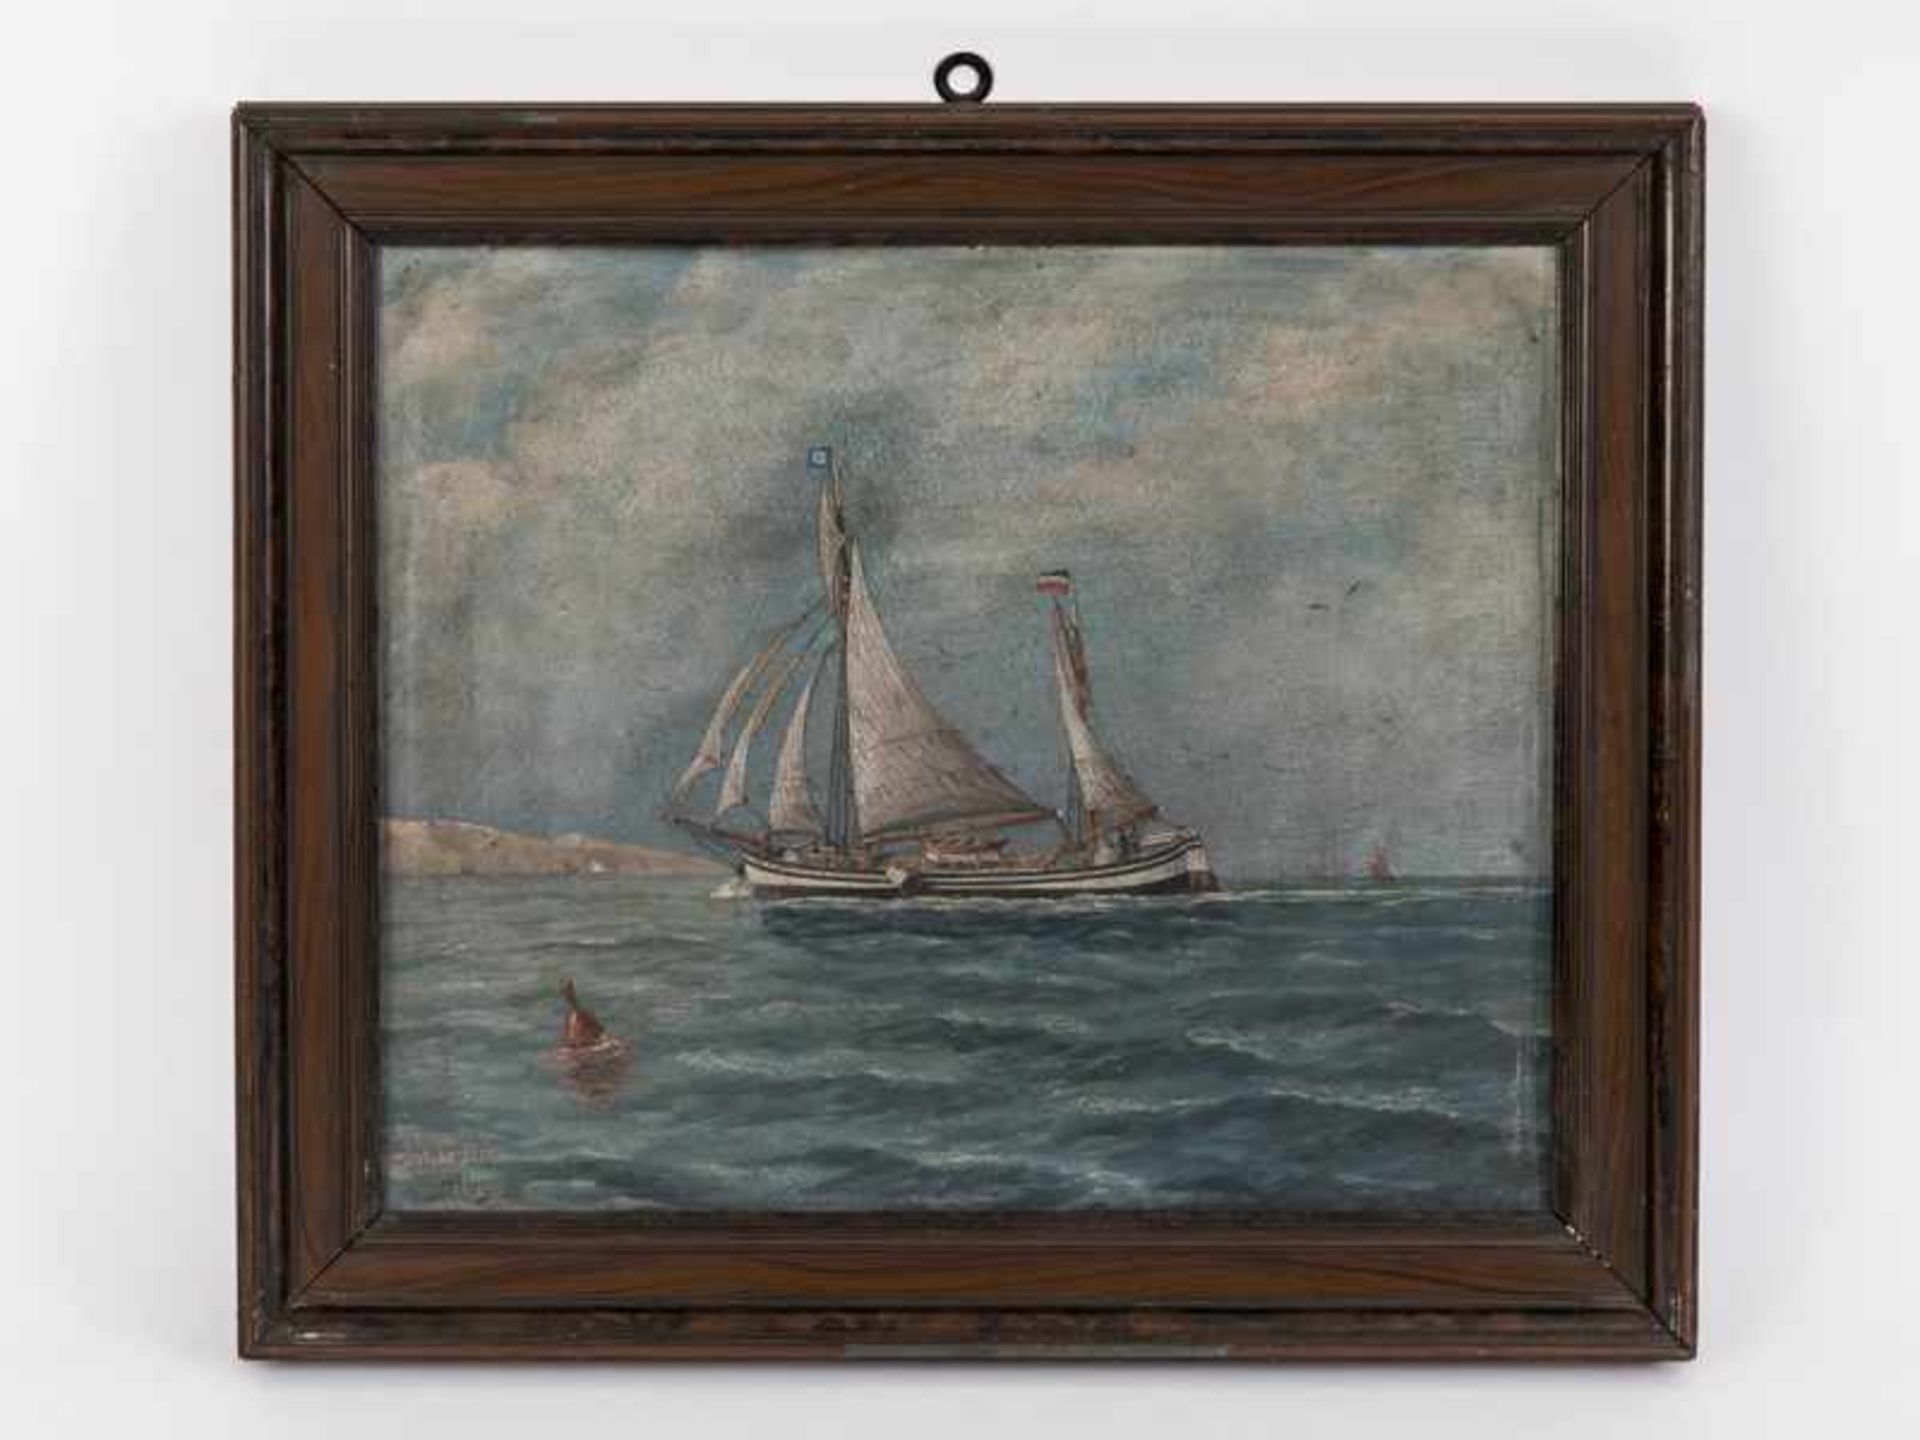 Hamburger Schiffs-/Marinemaler ("Sharpin"), Anf. 20. Jh. Öl auf Malkarton; "Kapitänsbild/